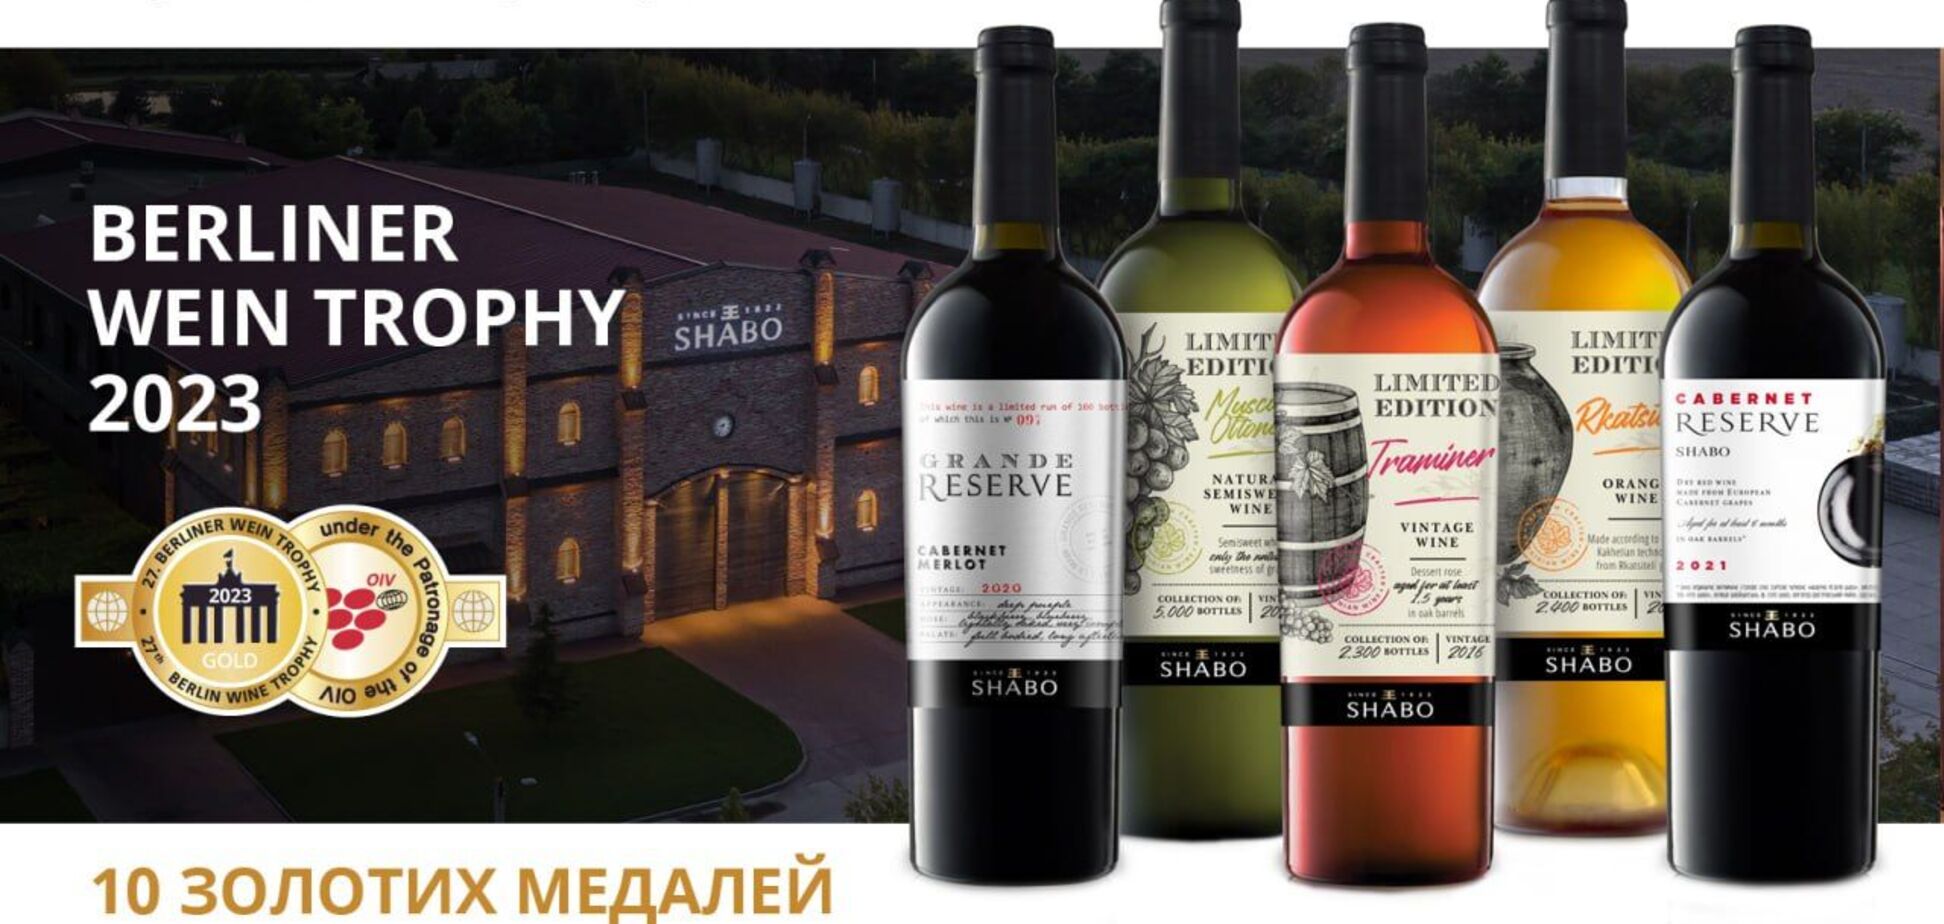 Украинские вина SHABO получили 10 золотых медалей на конкурсе Berliner Wine Trophy 2023